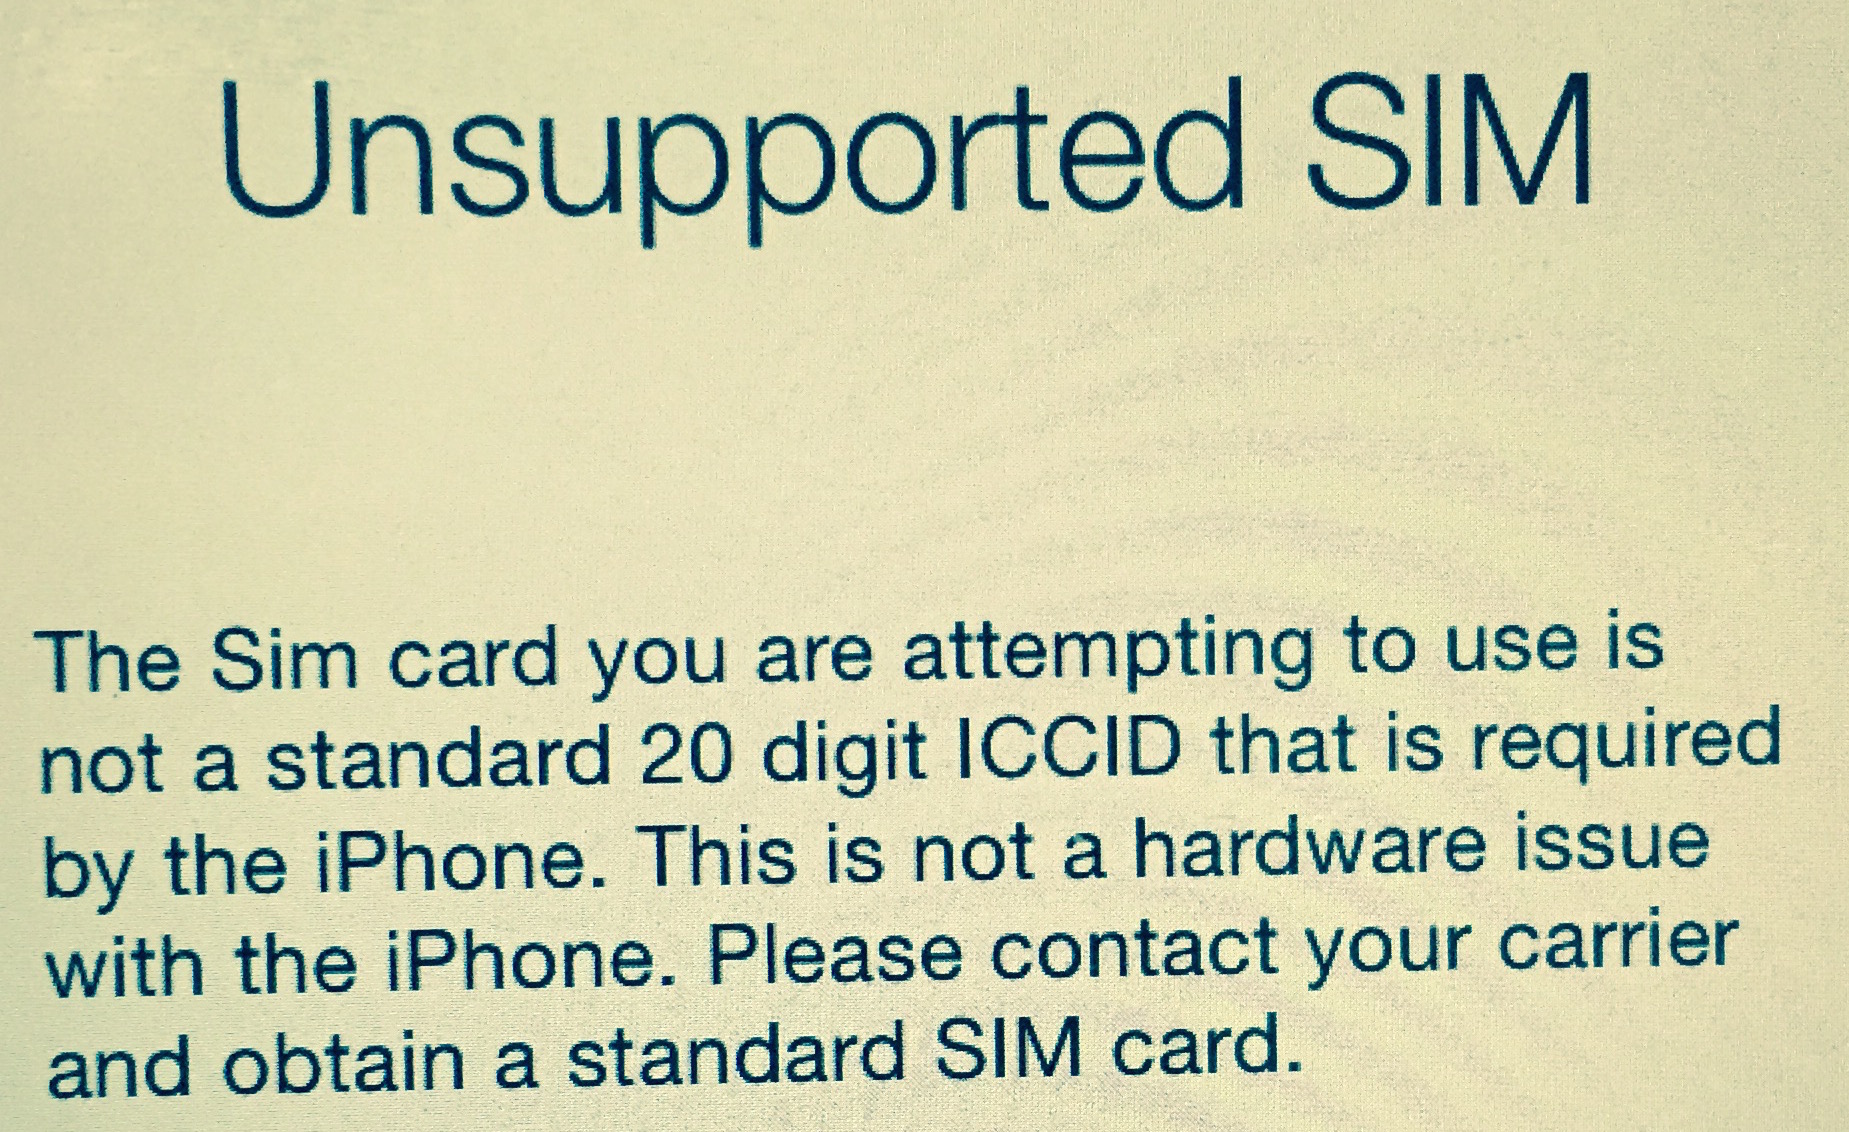 iPhone, come risolvere il problema Unsupported SIM